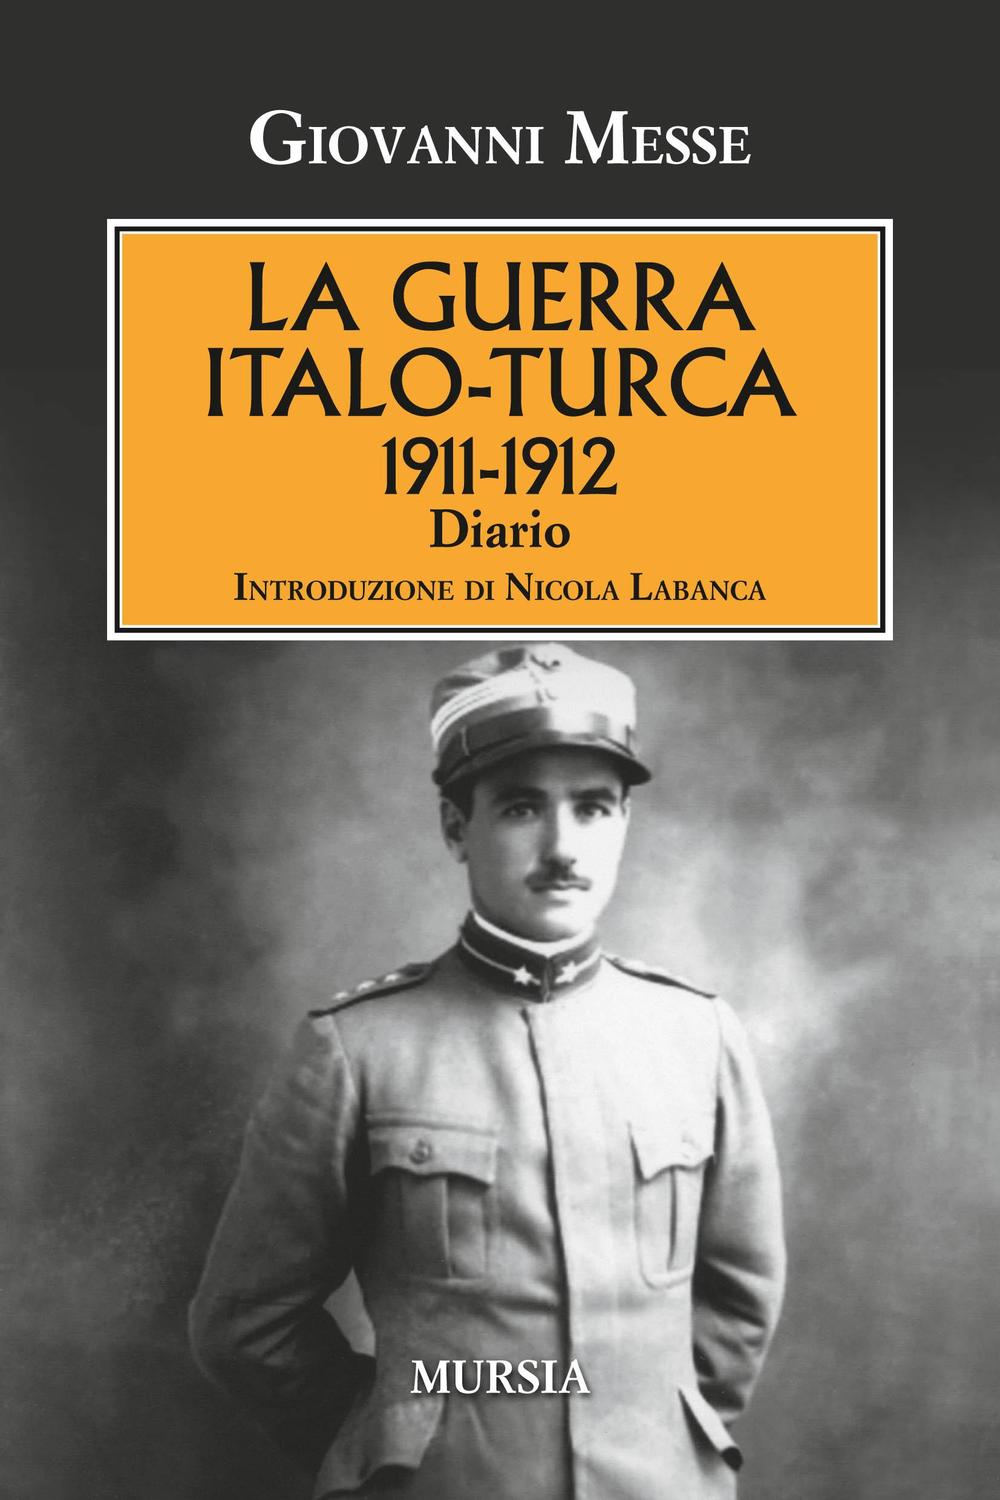 La guerra italo-turca (1911-1912). Diario